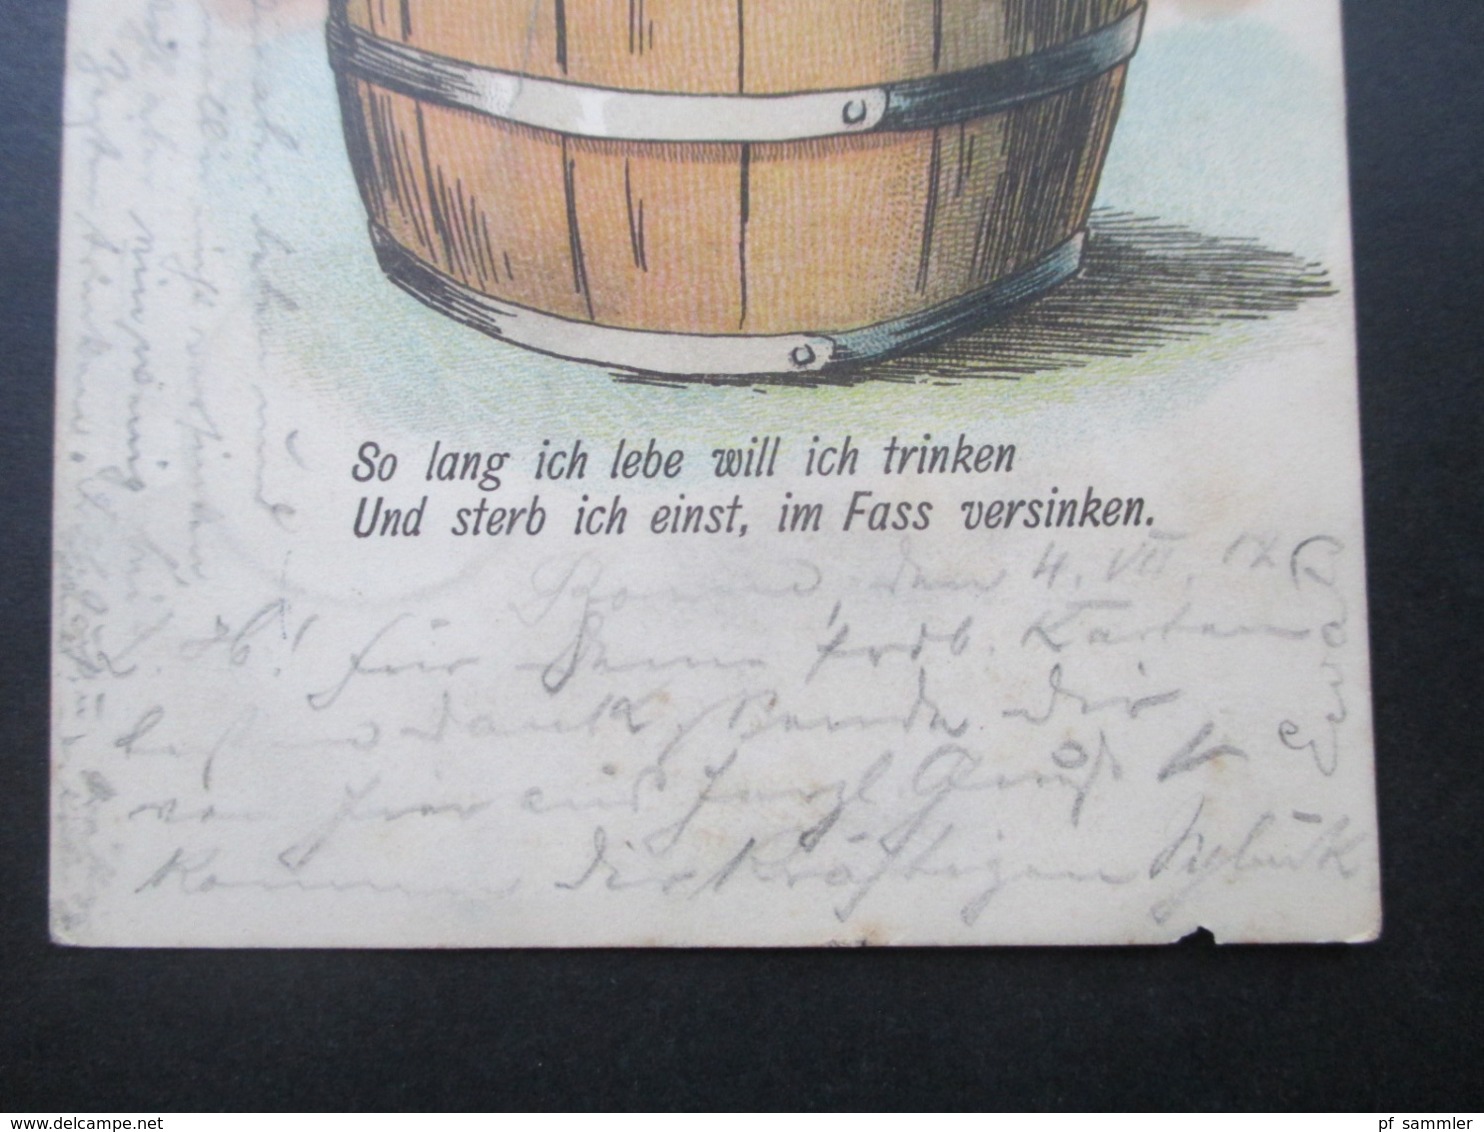 AK 1902 Künstlerkarte Mann Badet Im Bierfass / Badet Im Bier! Verlag Von Ottmar Zieher, München. Prosit! - Hotels & Restaurants